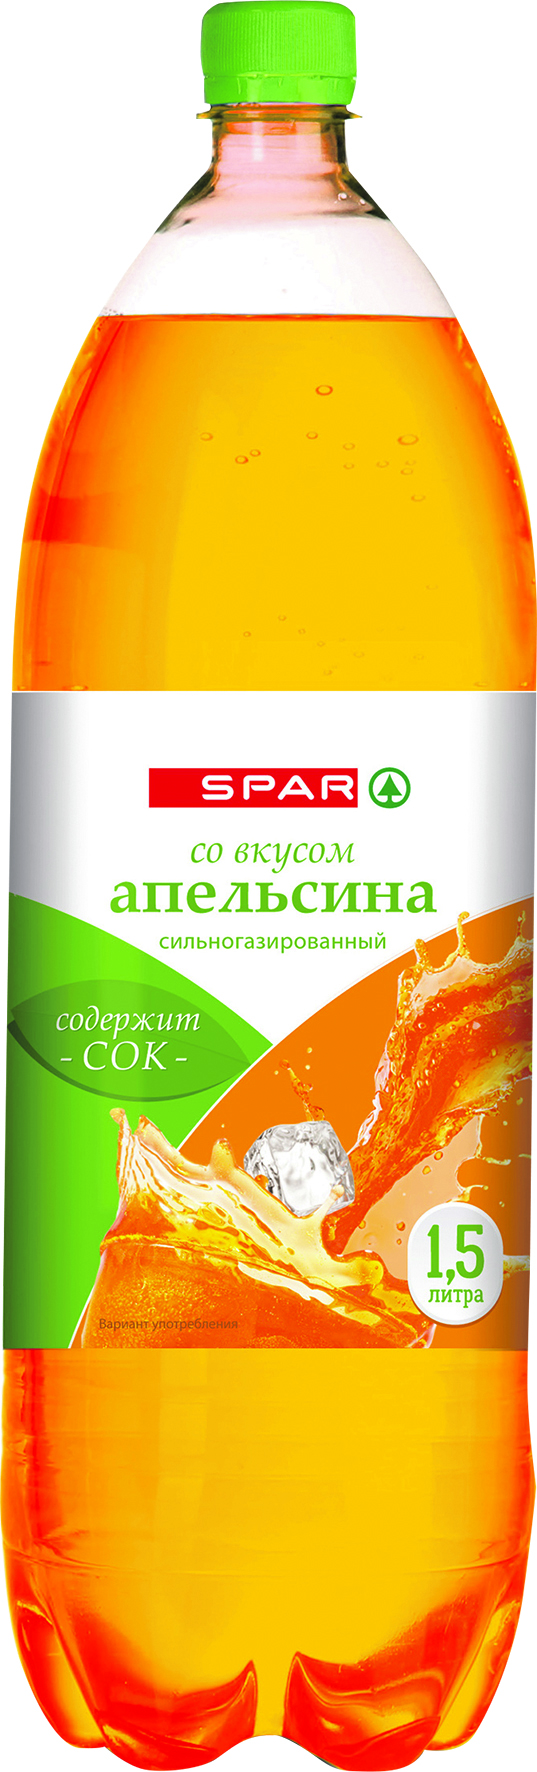 Газированный напиток Spar Апельсин 1,5 л